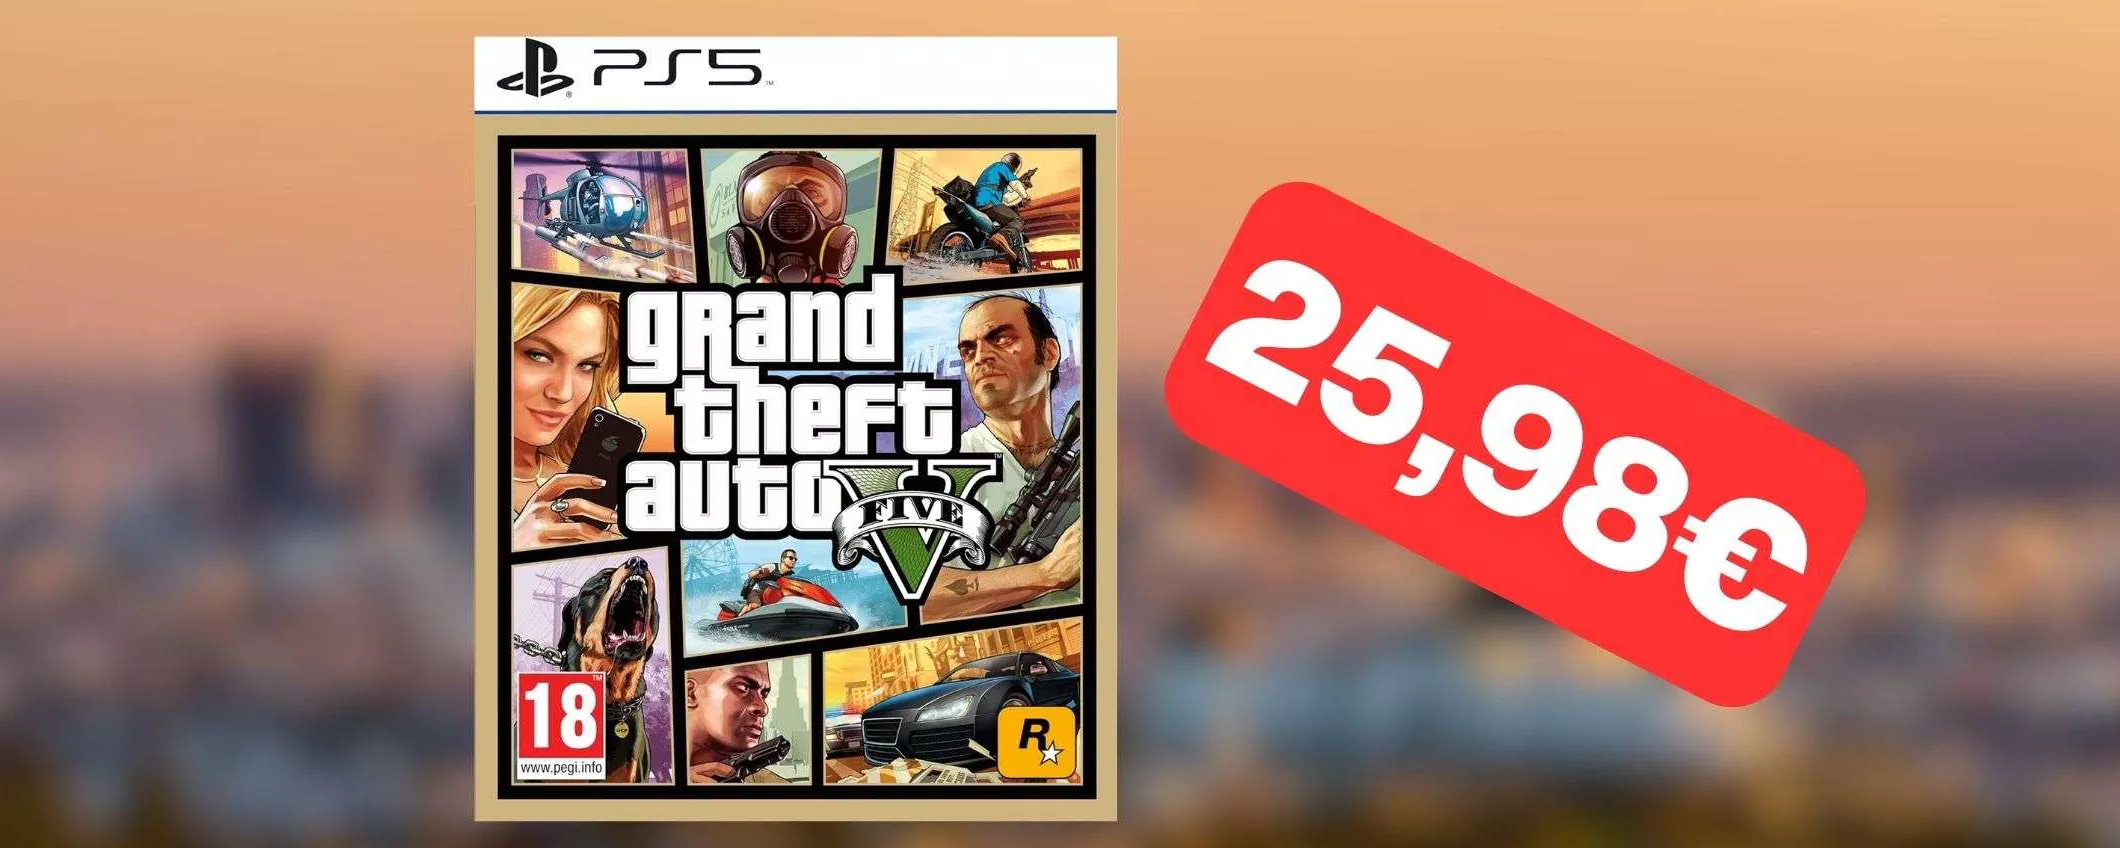 GTA 5 per PS5 in OFFERTA: il prezzo è un vero affare